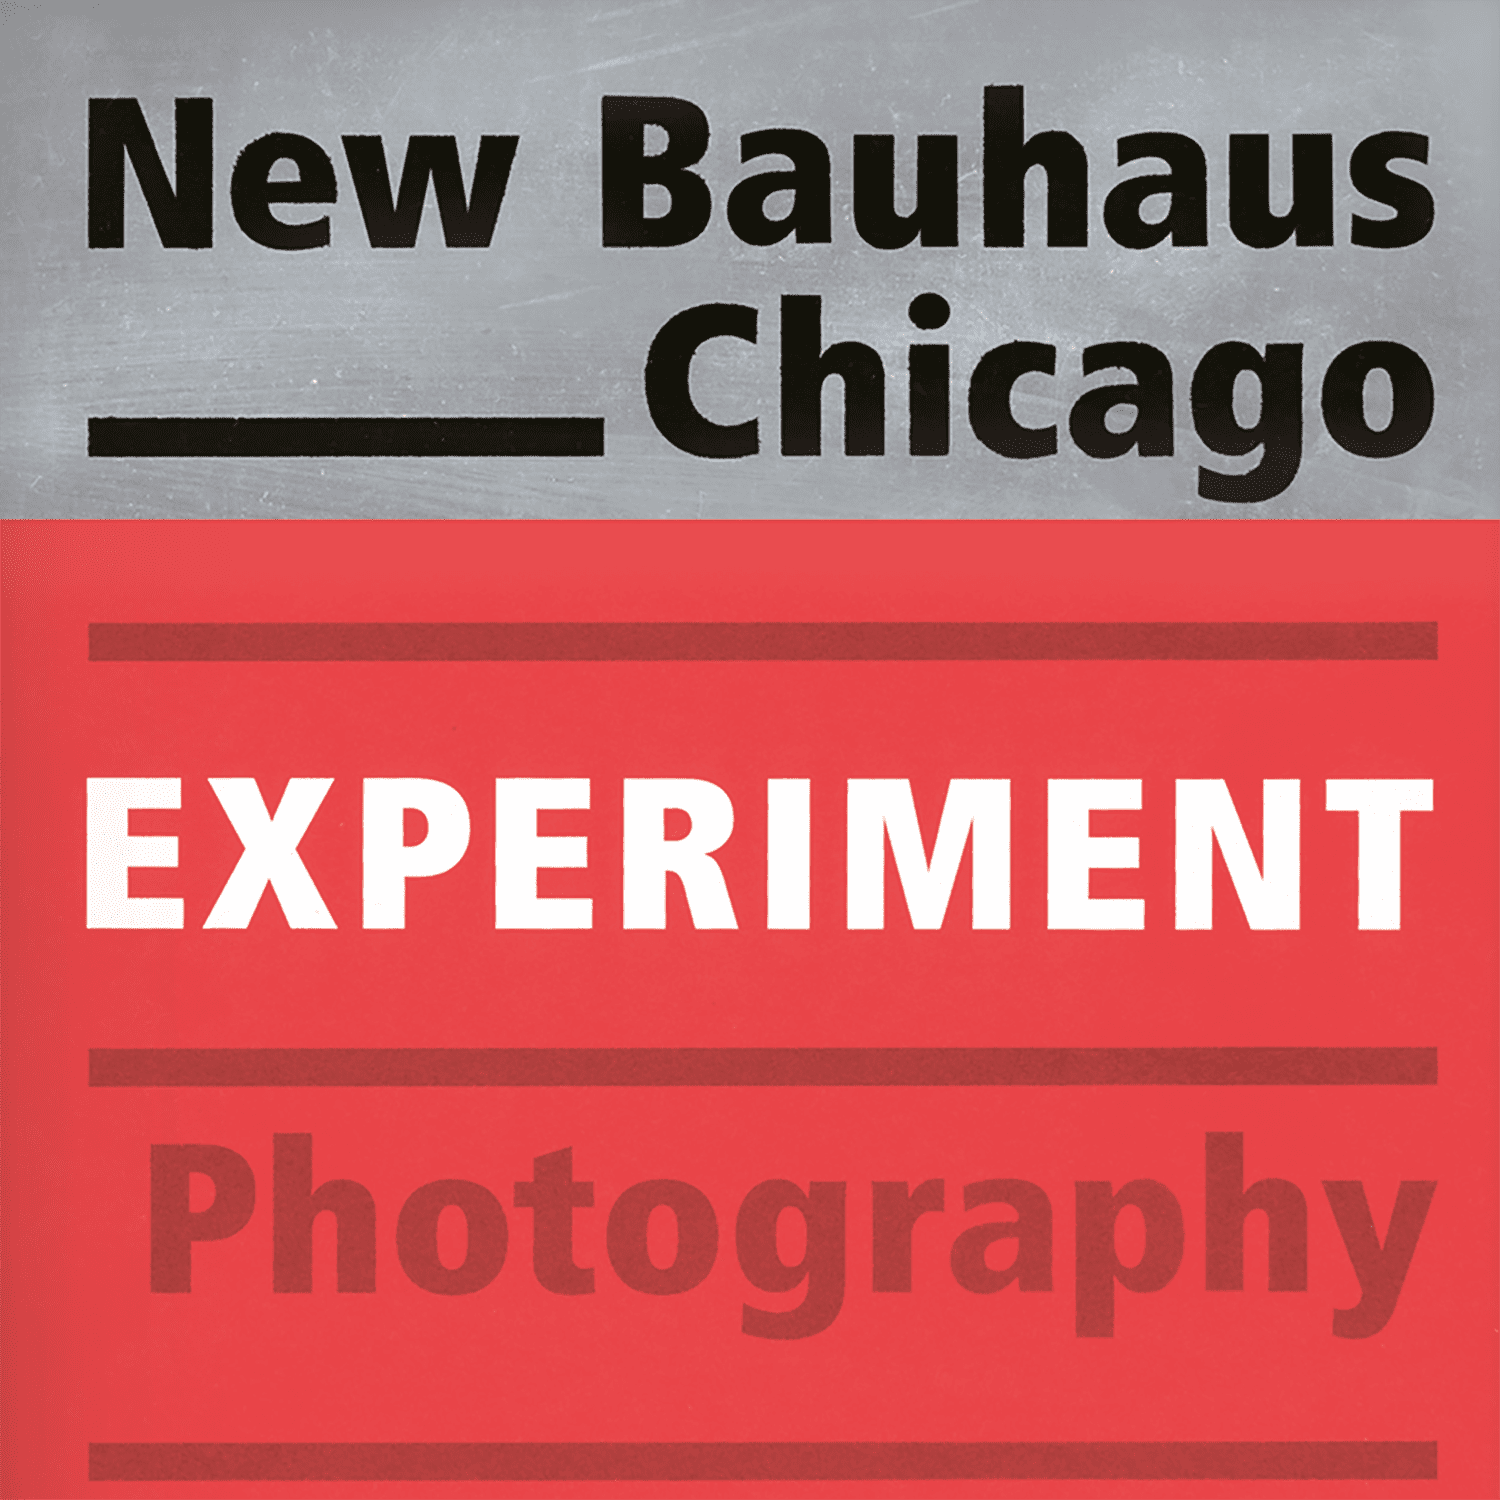 Image de New Bauhaus Chicago - Photographie expérimentale